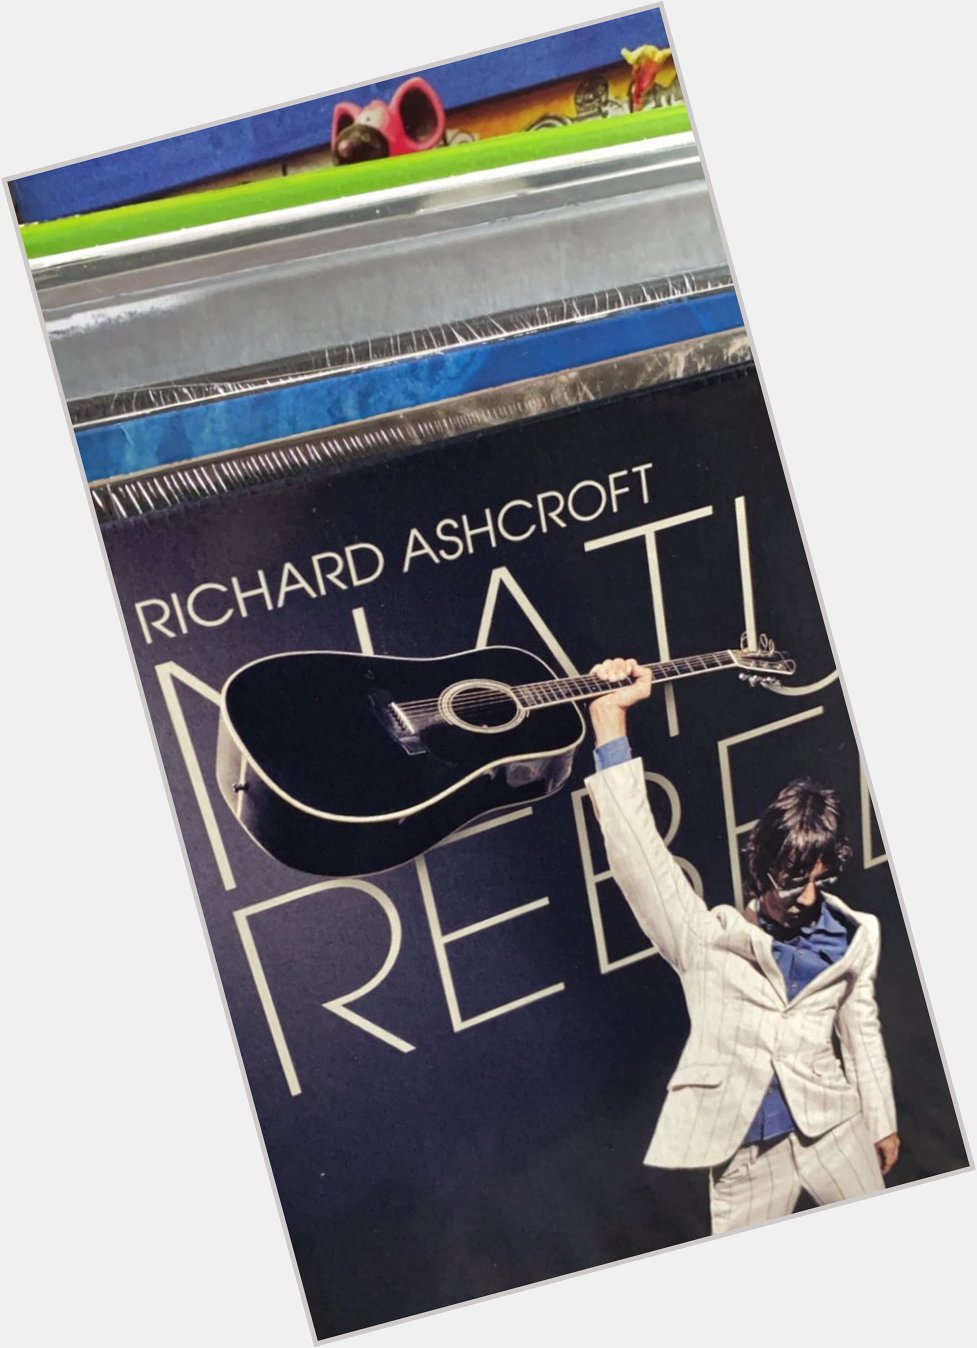 Happy Birthday to Richard Ashcroft   